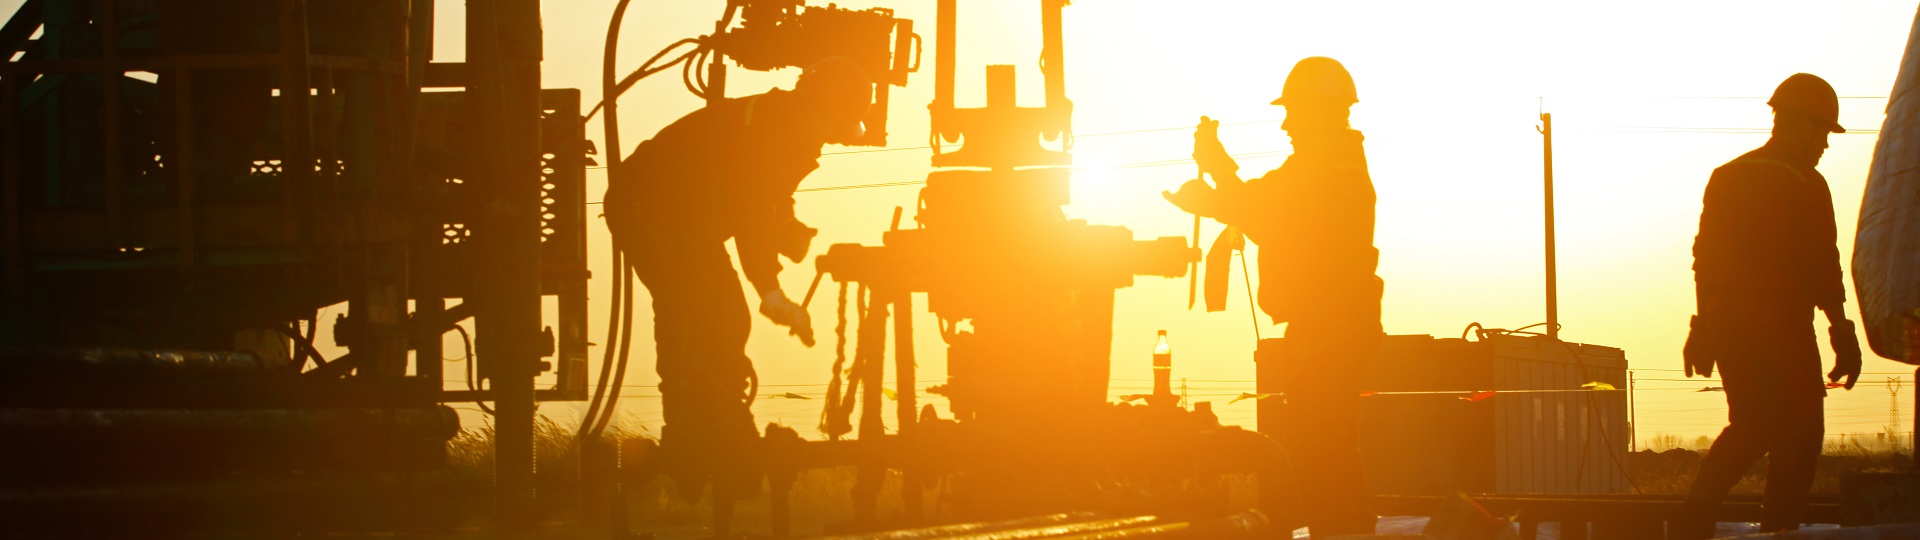 Cena ropy se přehoupla přes 82 dolarů za barel